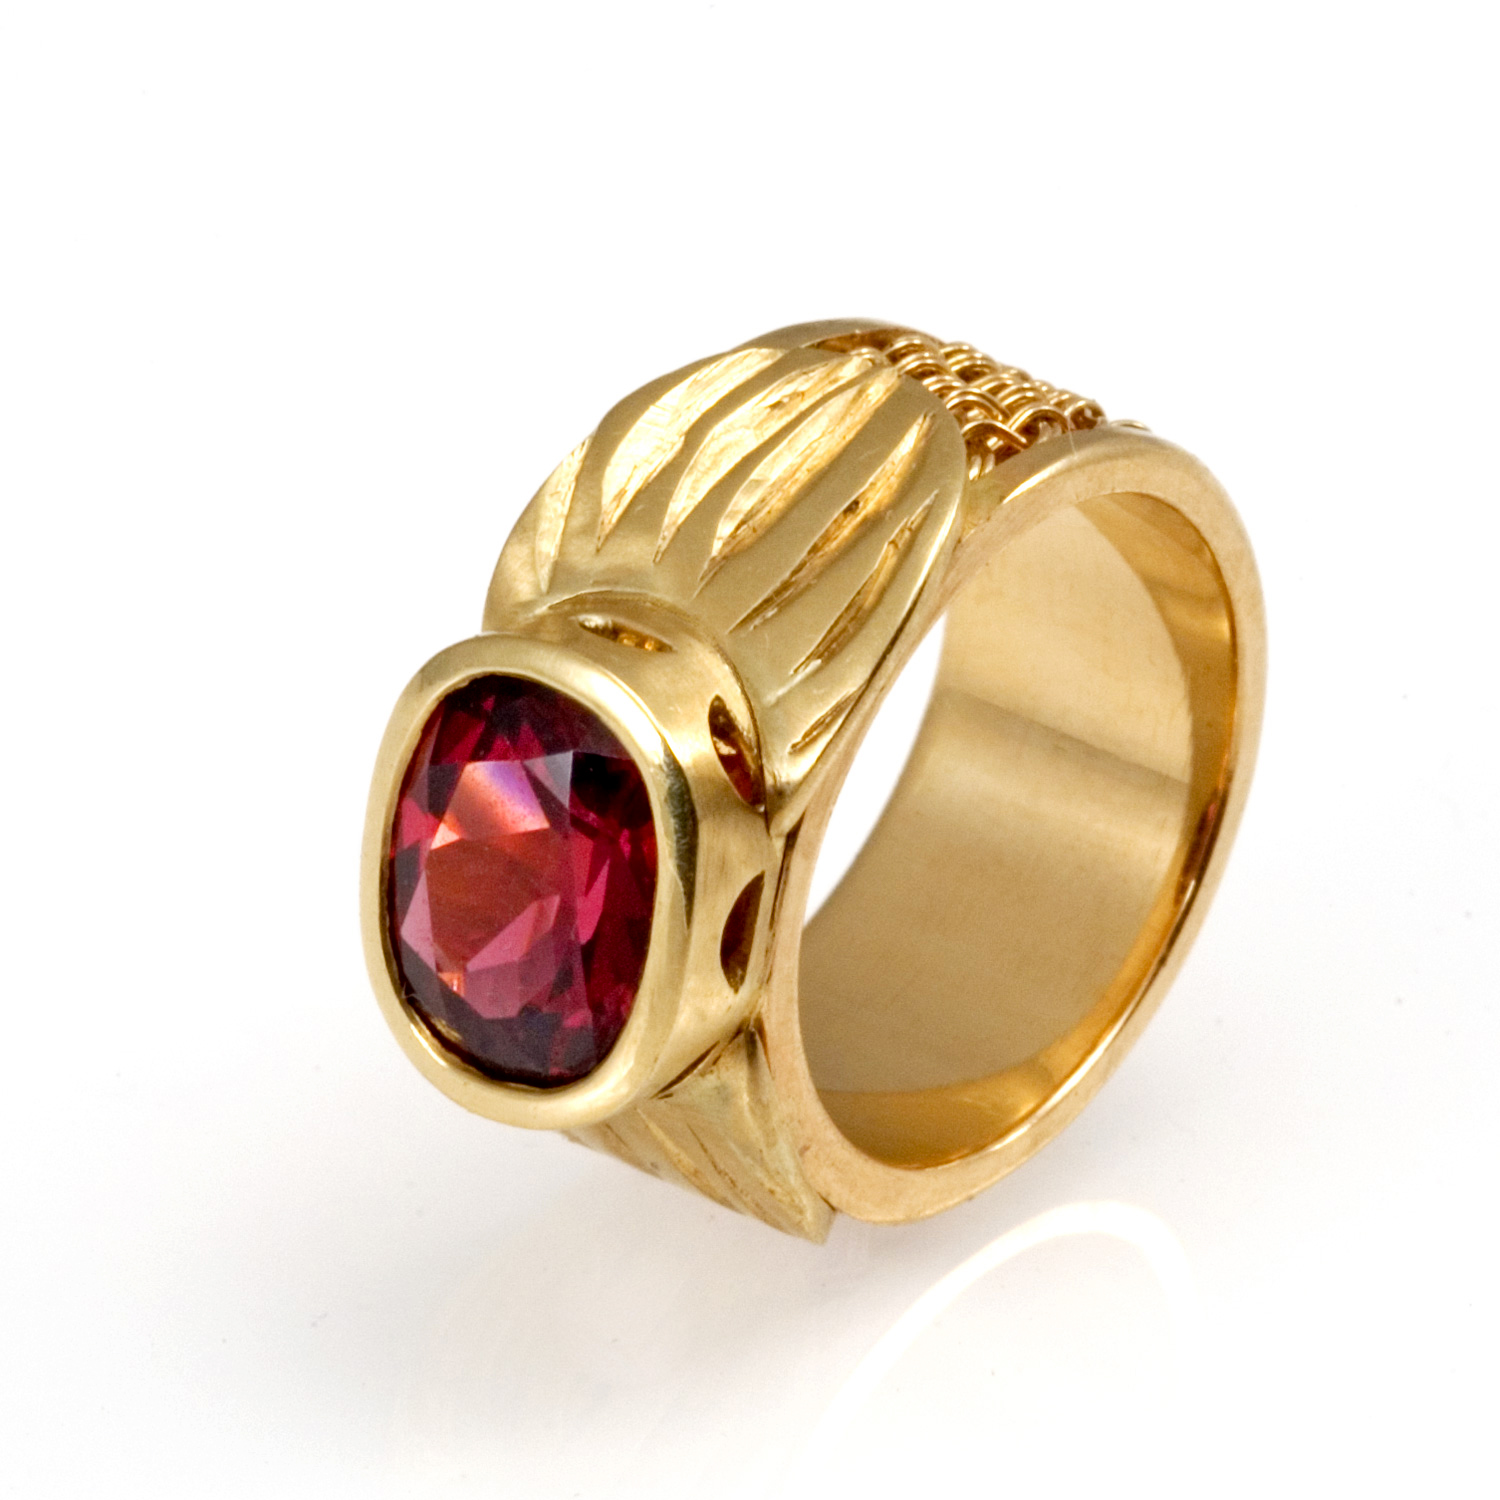 Carved Rhodolite Ring 18k gold, rhodolite garnet